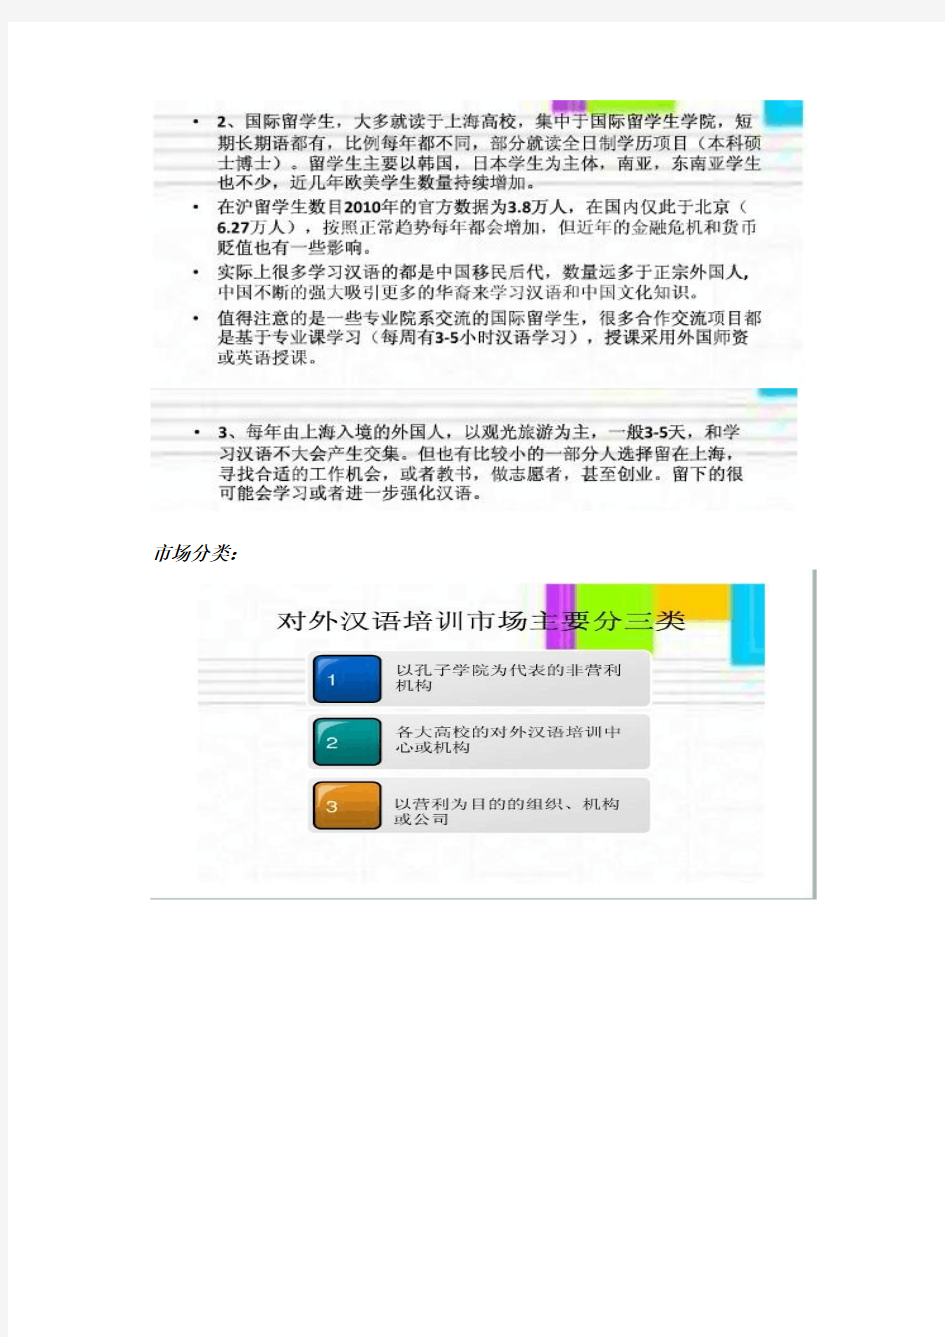 对外汉语教学市场分析报告(整合版)汇总-共15页